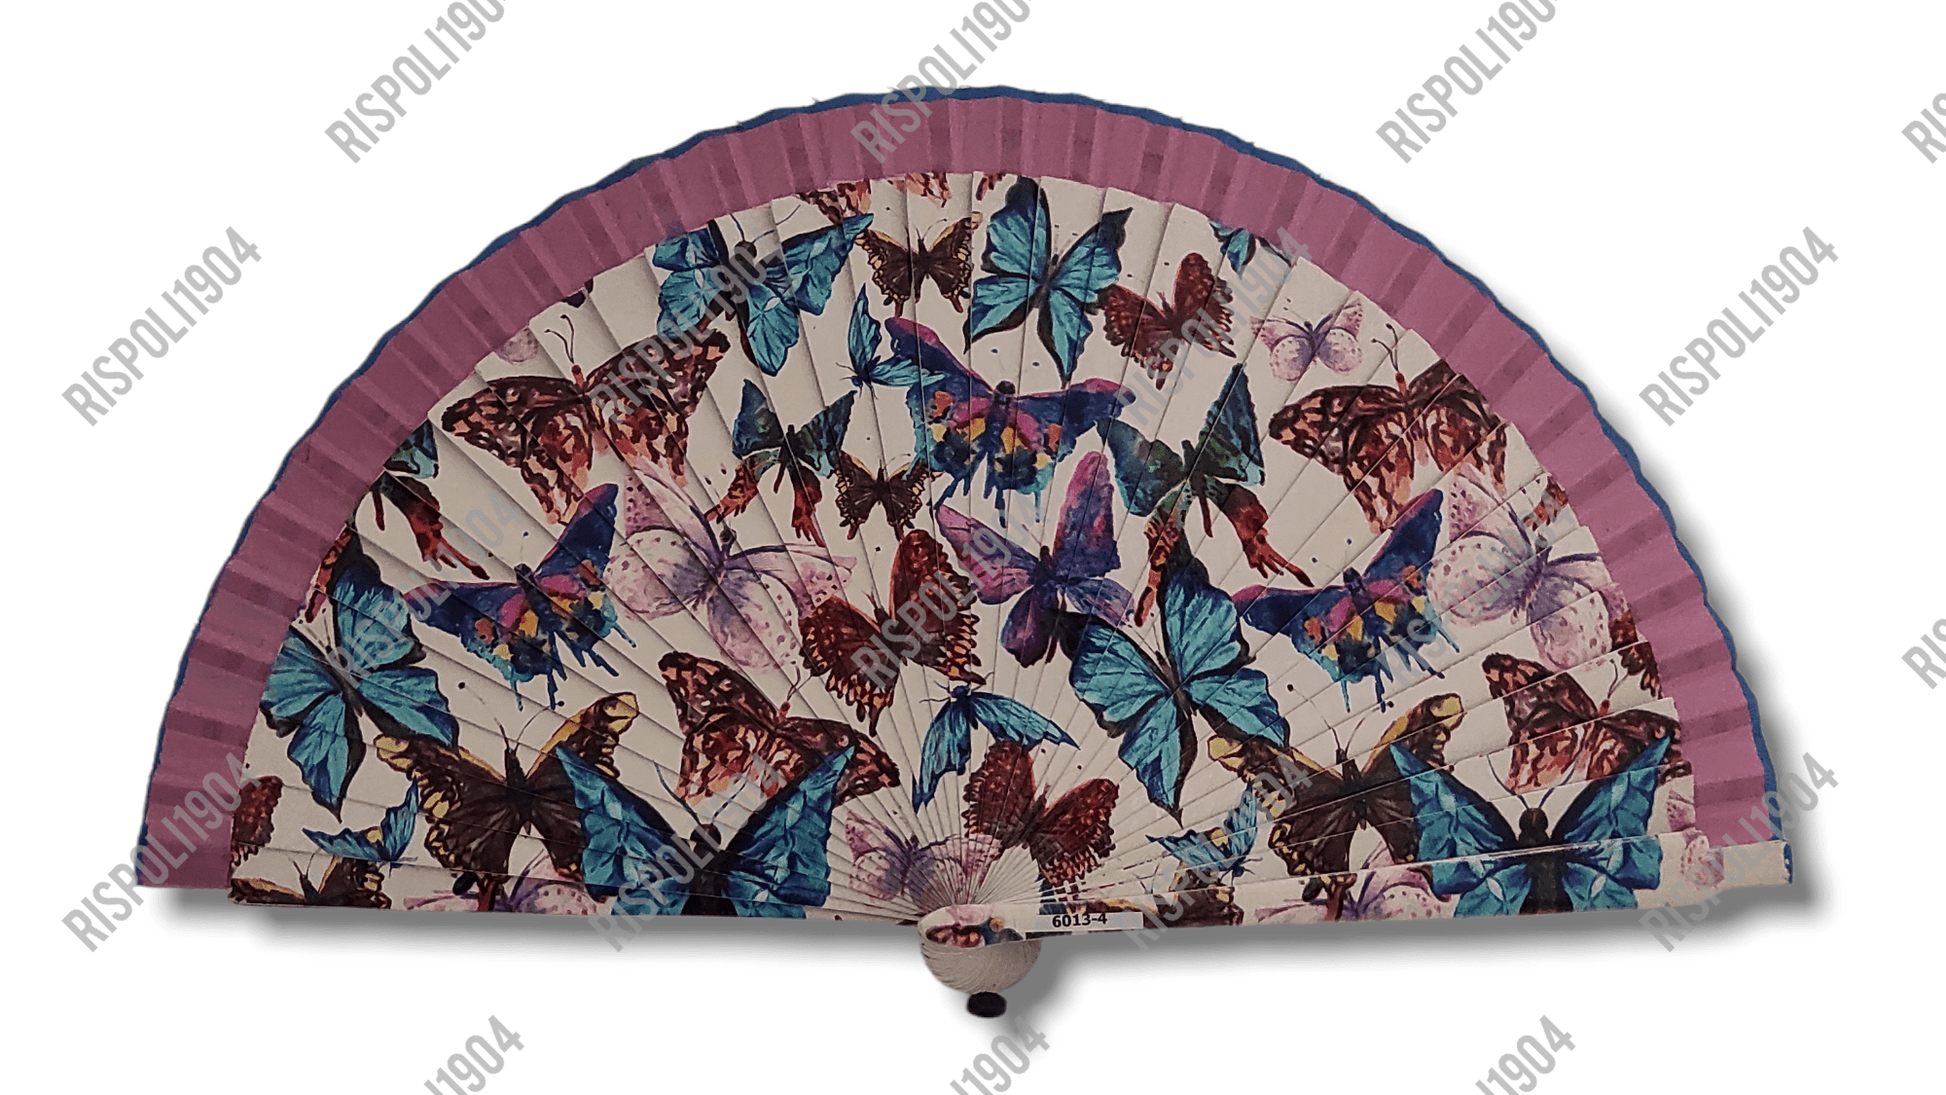 Ventaglio in legno con farfalle a stampa digitale. Apertura 42 cm. #6013-4 - Merceria Rispoli